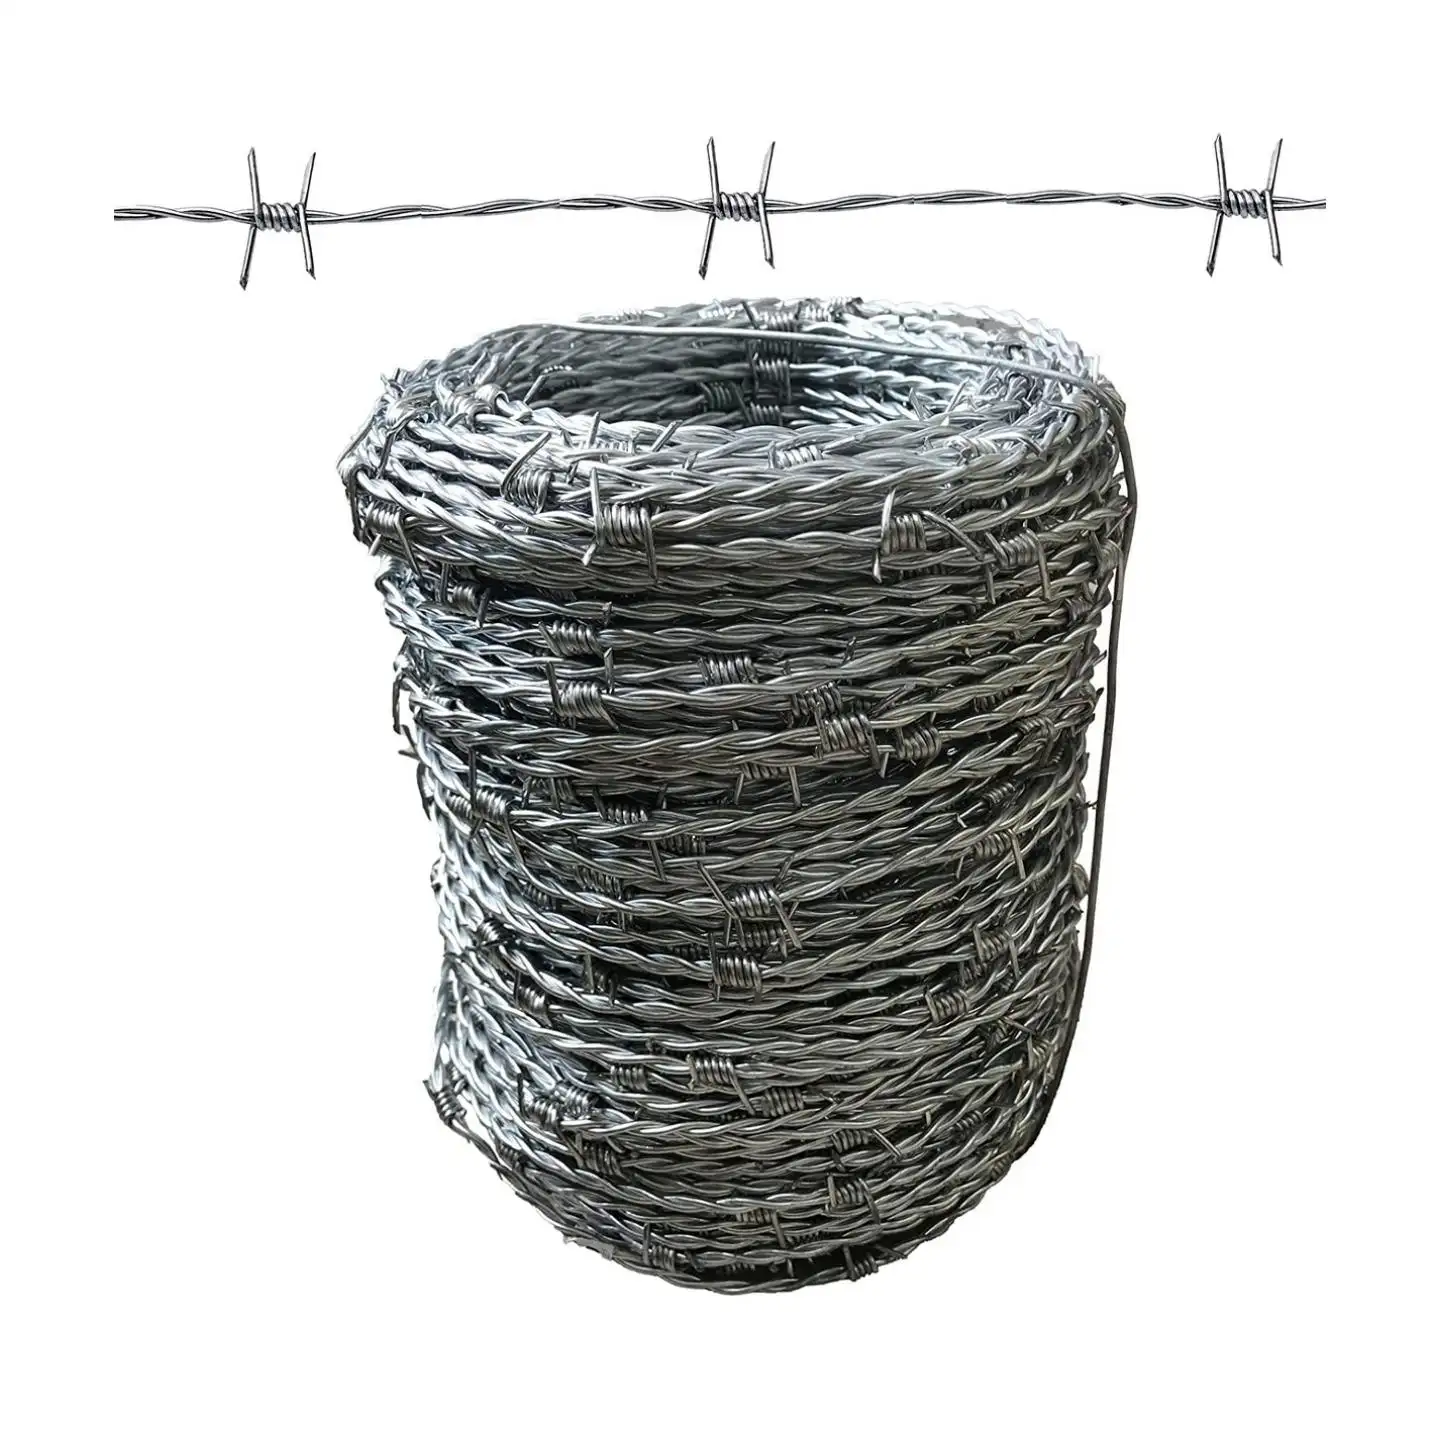 Jiletli tel için çit kaynaklı tel örgü rulosu için dikenli tel ve dikenli tel dikenli tel